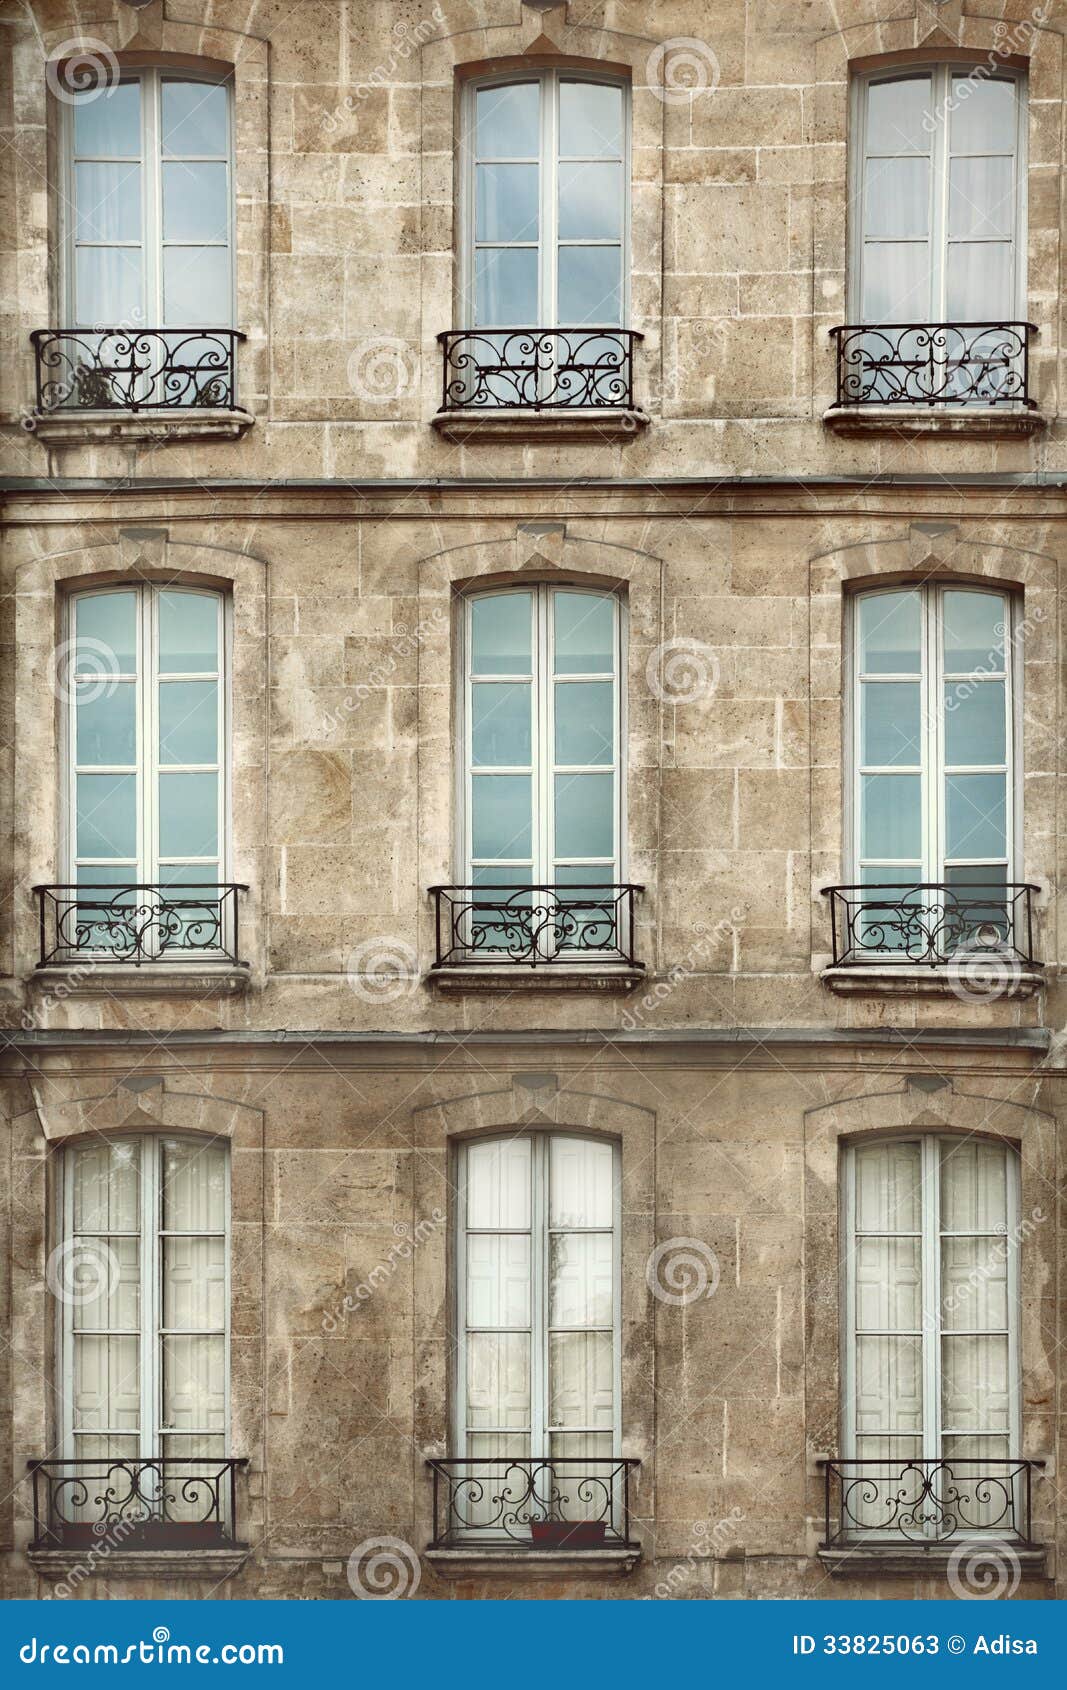 Paris Windows Stock Photos - Image: 33825063